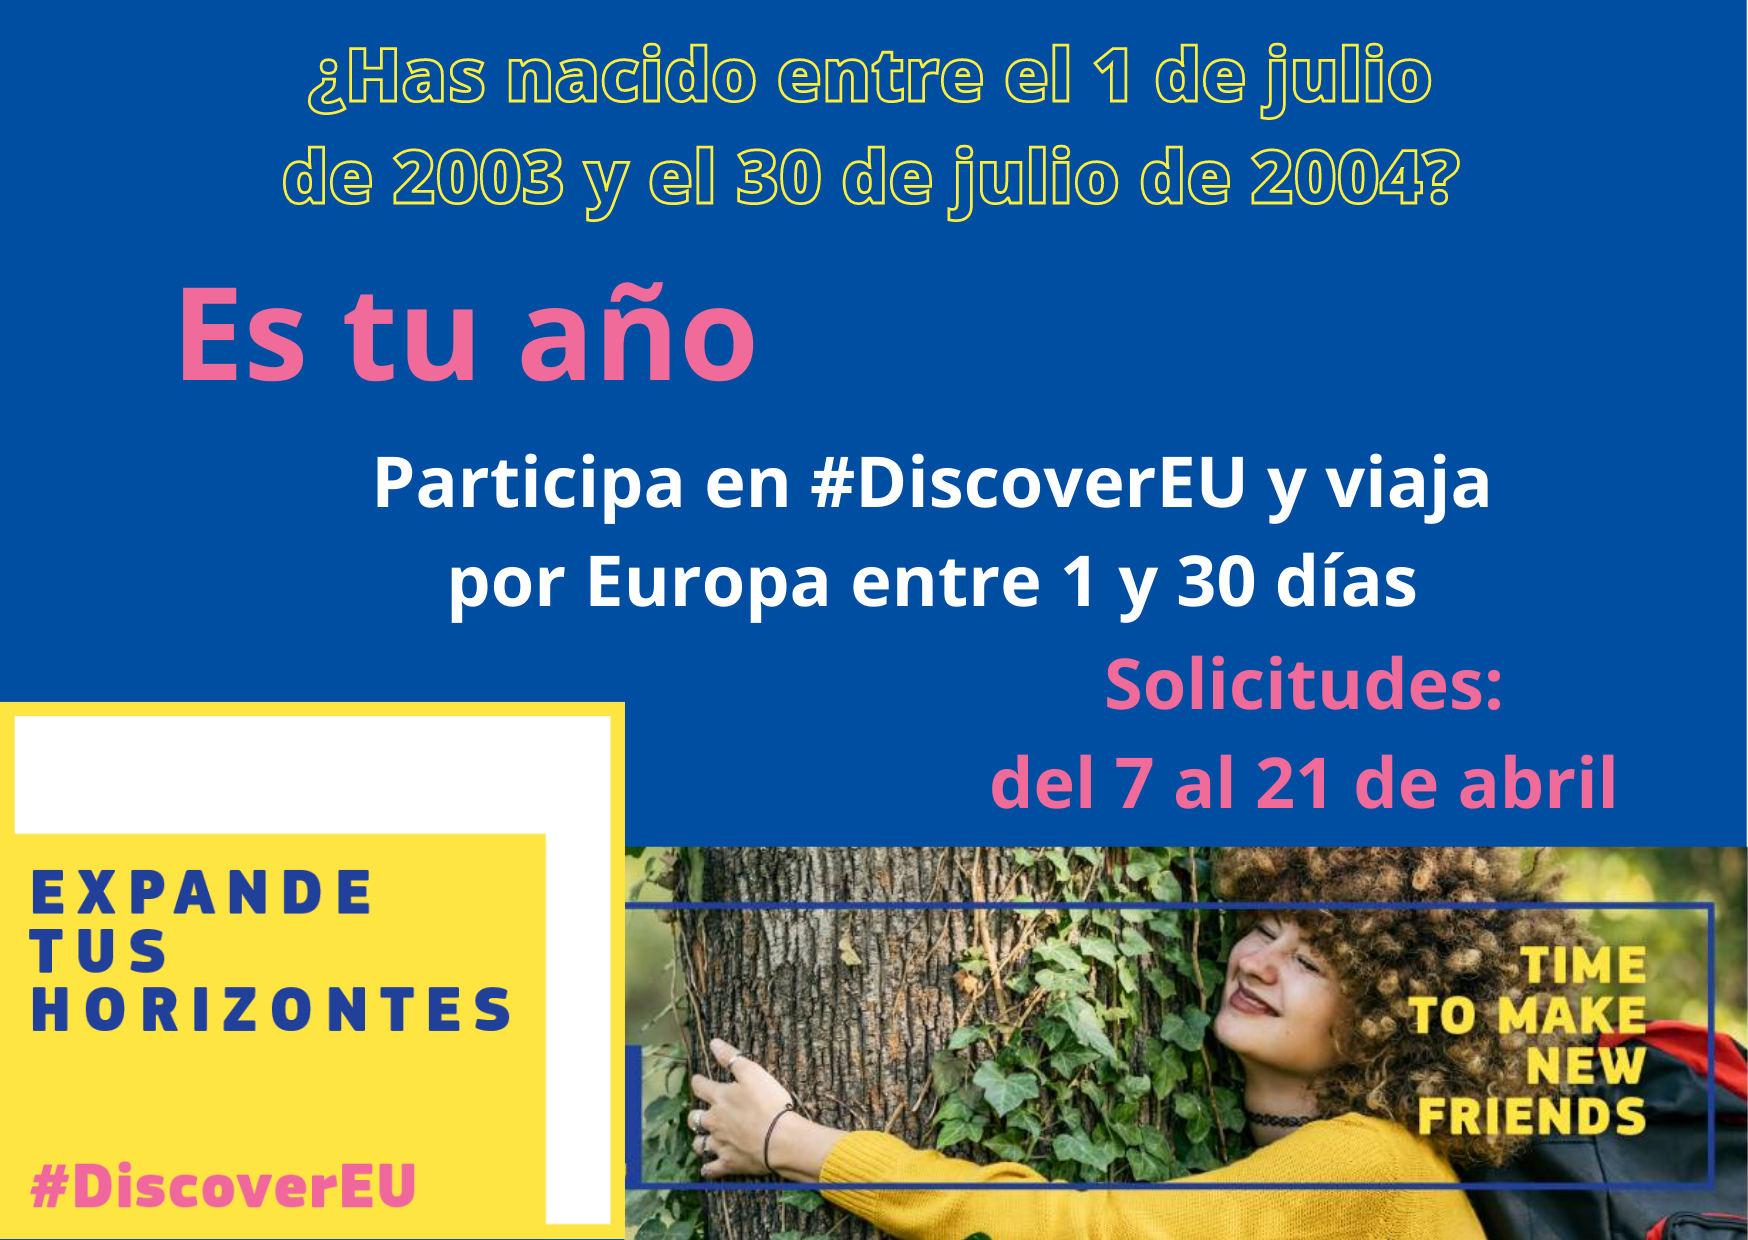 ¿Has nacido entre el 1 de julio de 2003 y el 30 de junio de 2004? Es tu año. Participa en DiscoverEU y viaja por Europa entre 1 y 30 días. Es el momento de hacer nuevos amigos.